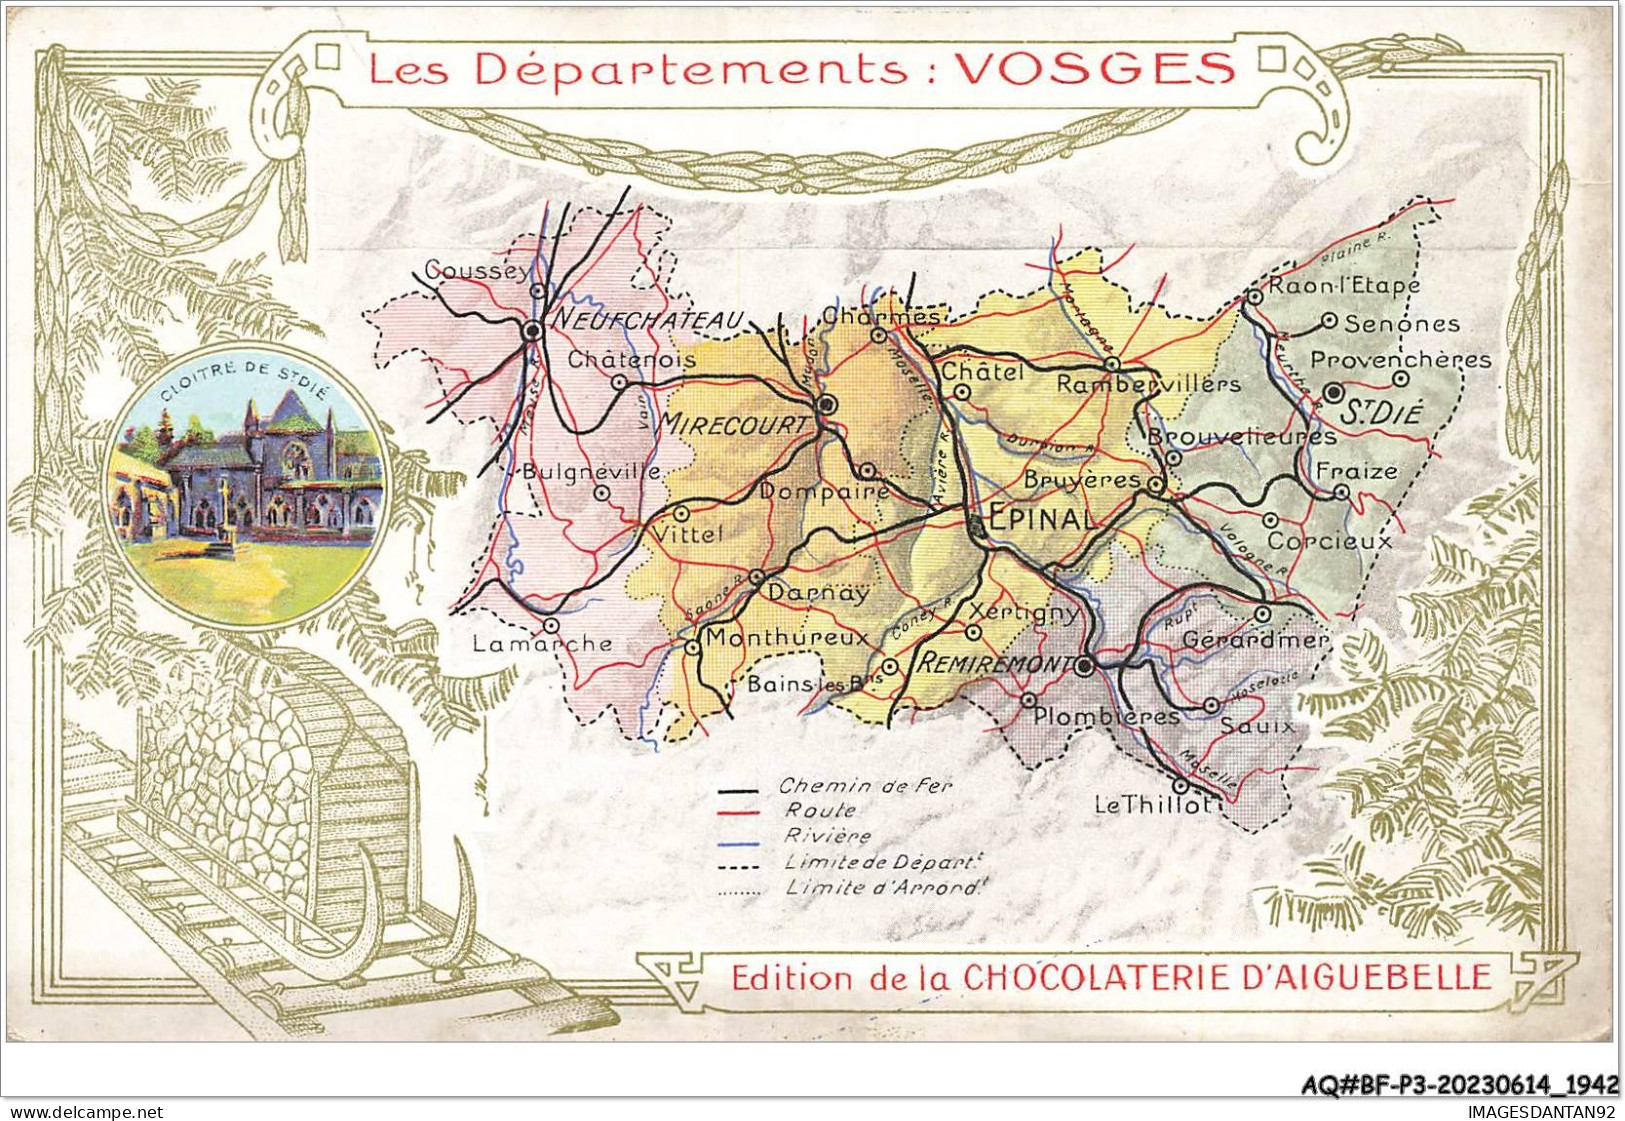 AQ#BFP3-CHROMOS-0969 - CHOCOLAT D'AIGUEBELLE - Les Départements - Vosges - Aiguebelle